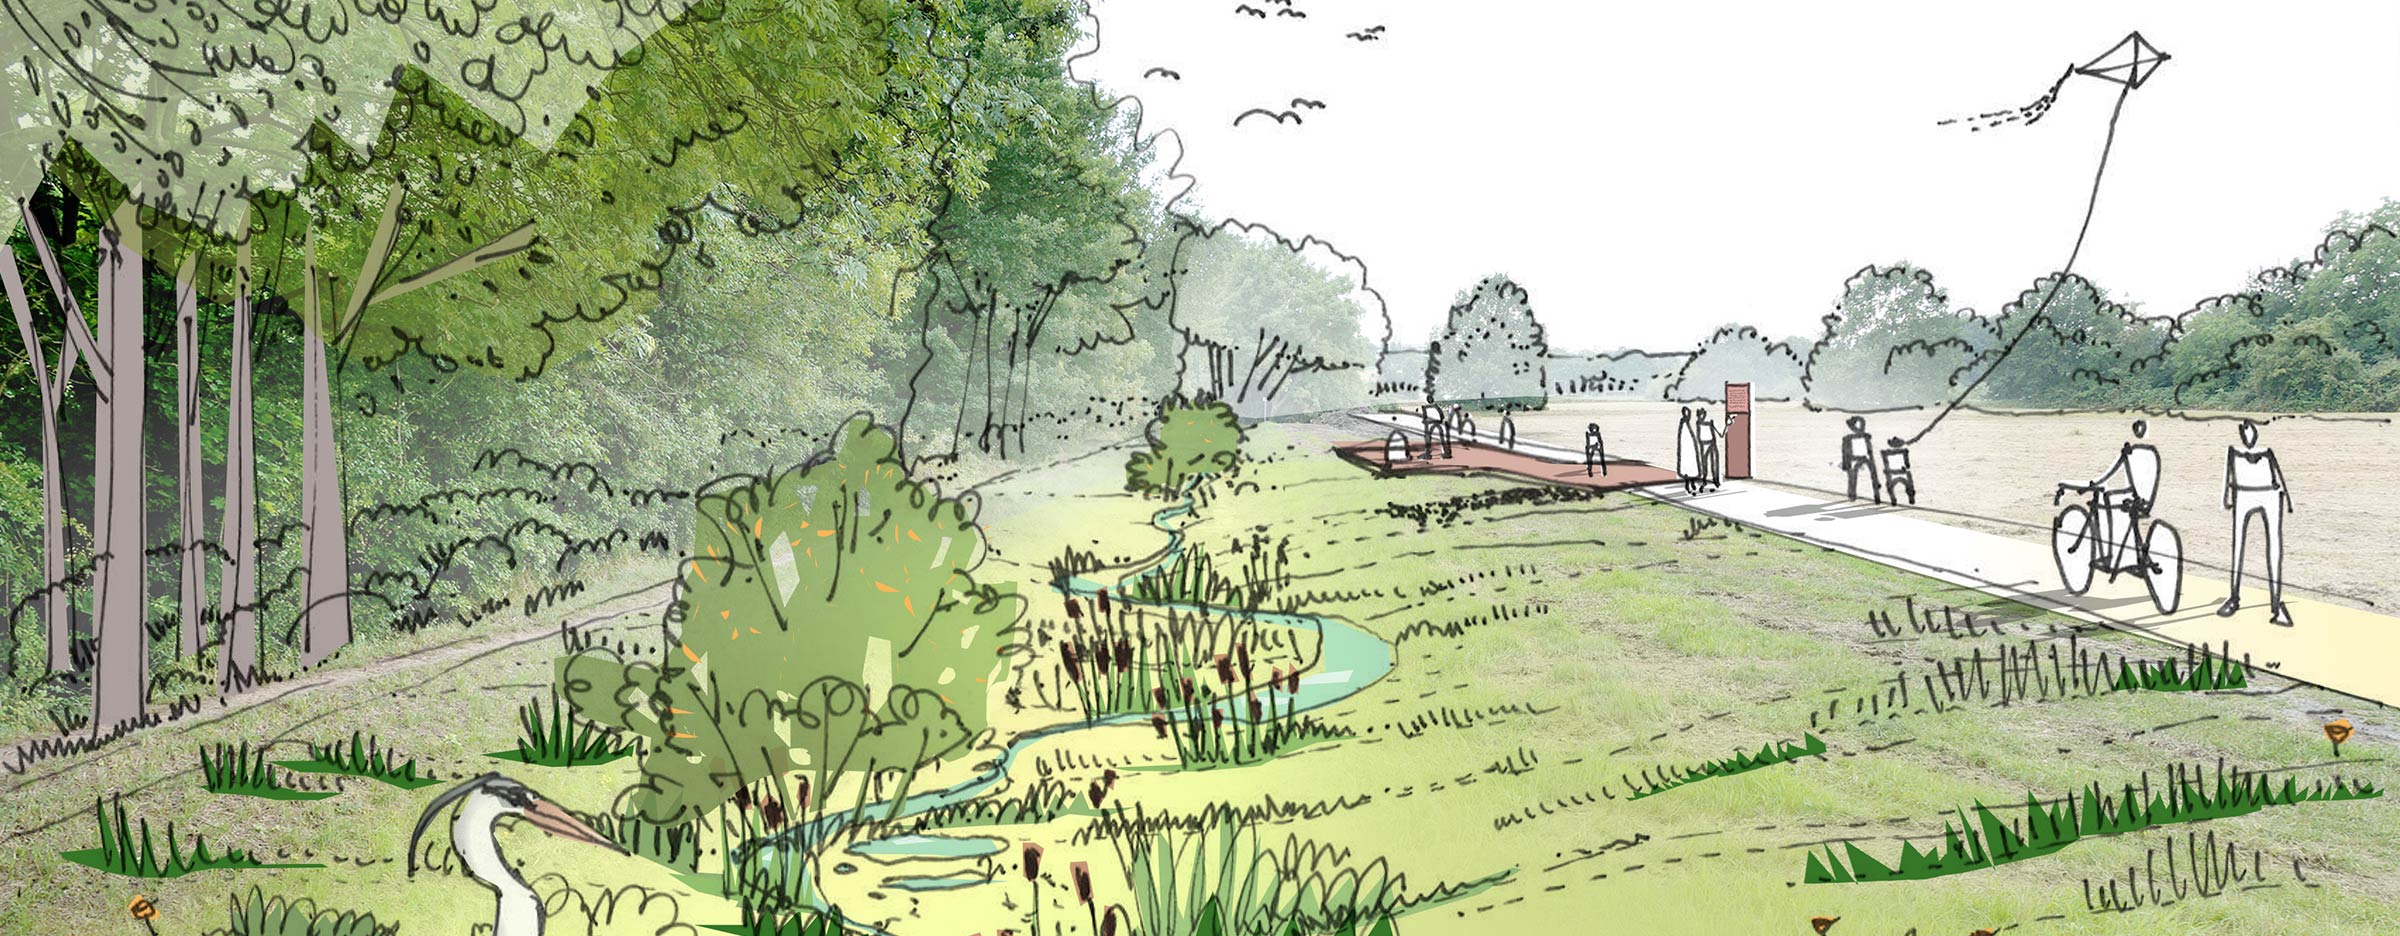 Das Bild zeigt eine Illustration einer renaturierten Fläche mit Parkcharakter im Altelbarm.